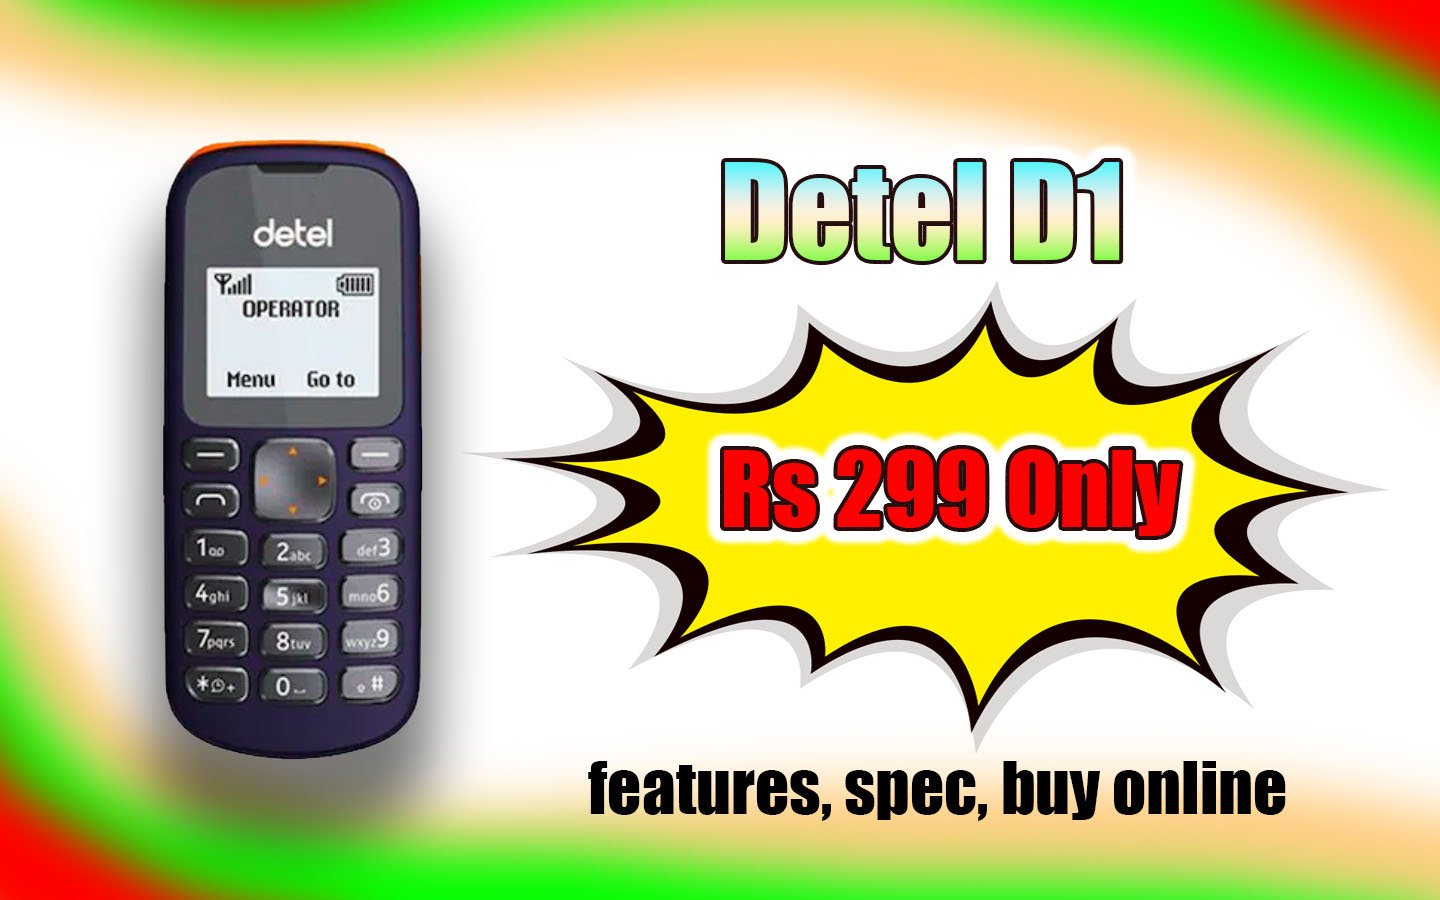 Detel D1 Rs 299 Mobile Phone, features, spec, buy online